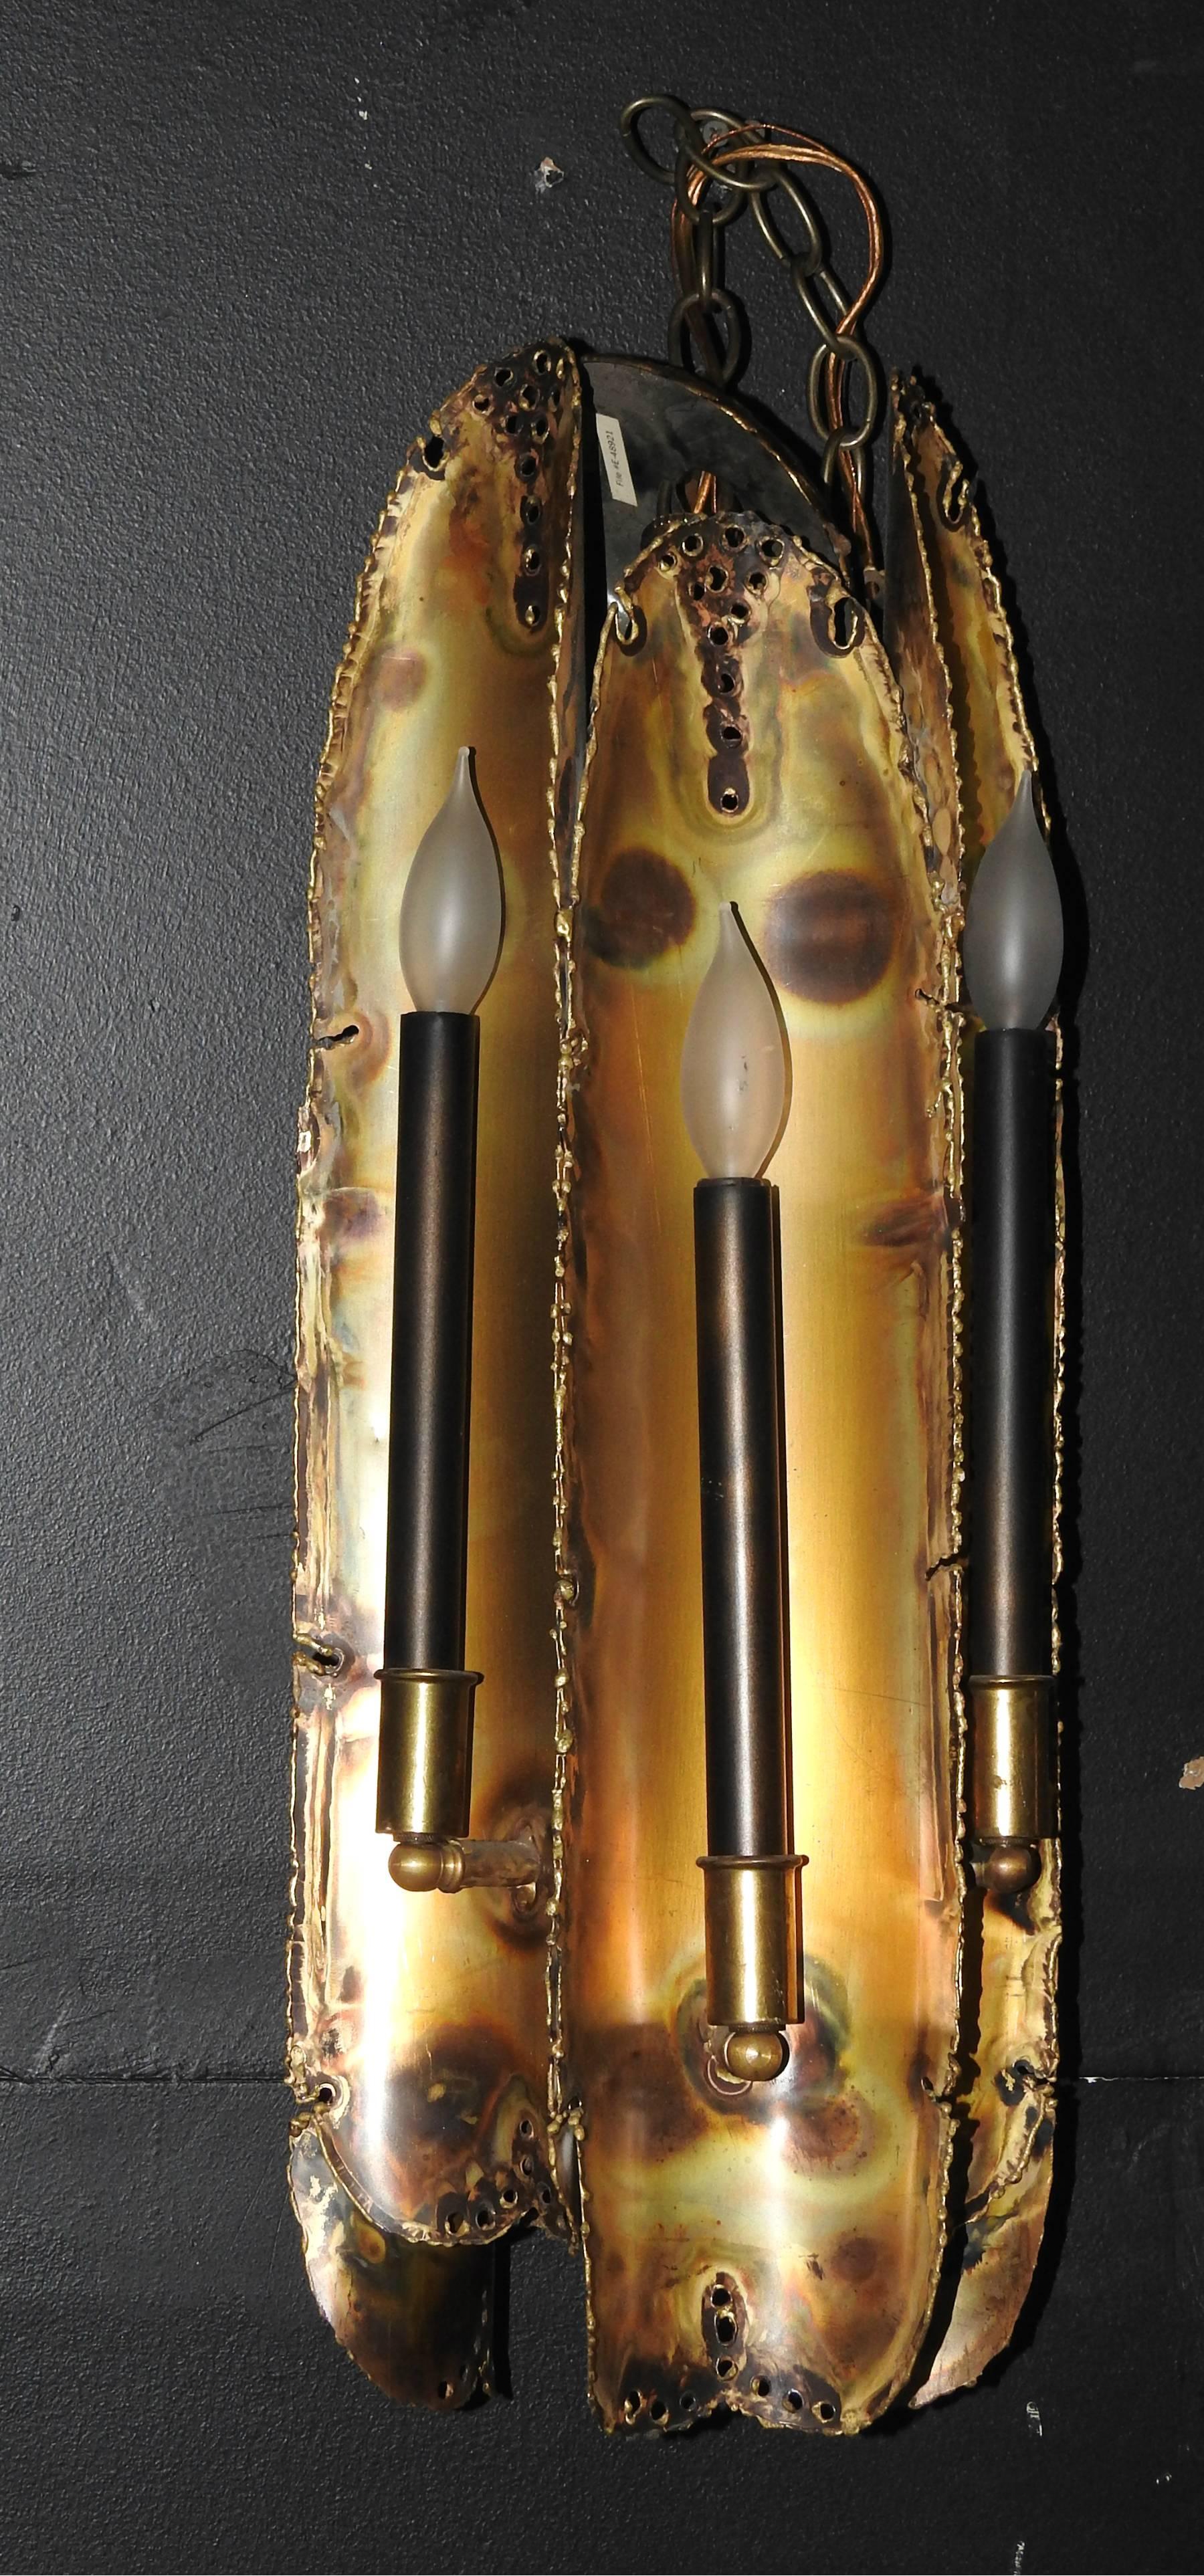 Six-light Brutalist torch cut brass hanging pendant light / chandelier by Tom Greene for Feldman Lighting.